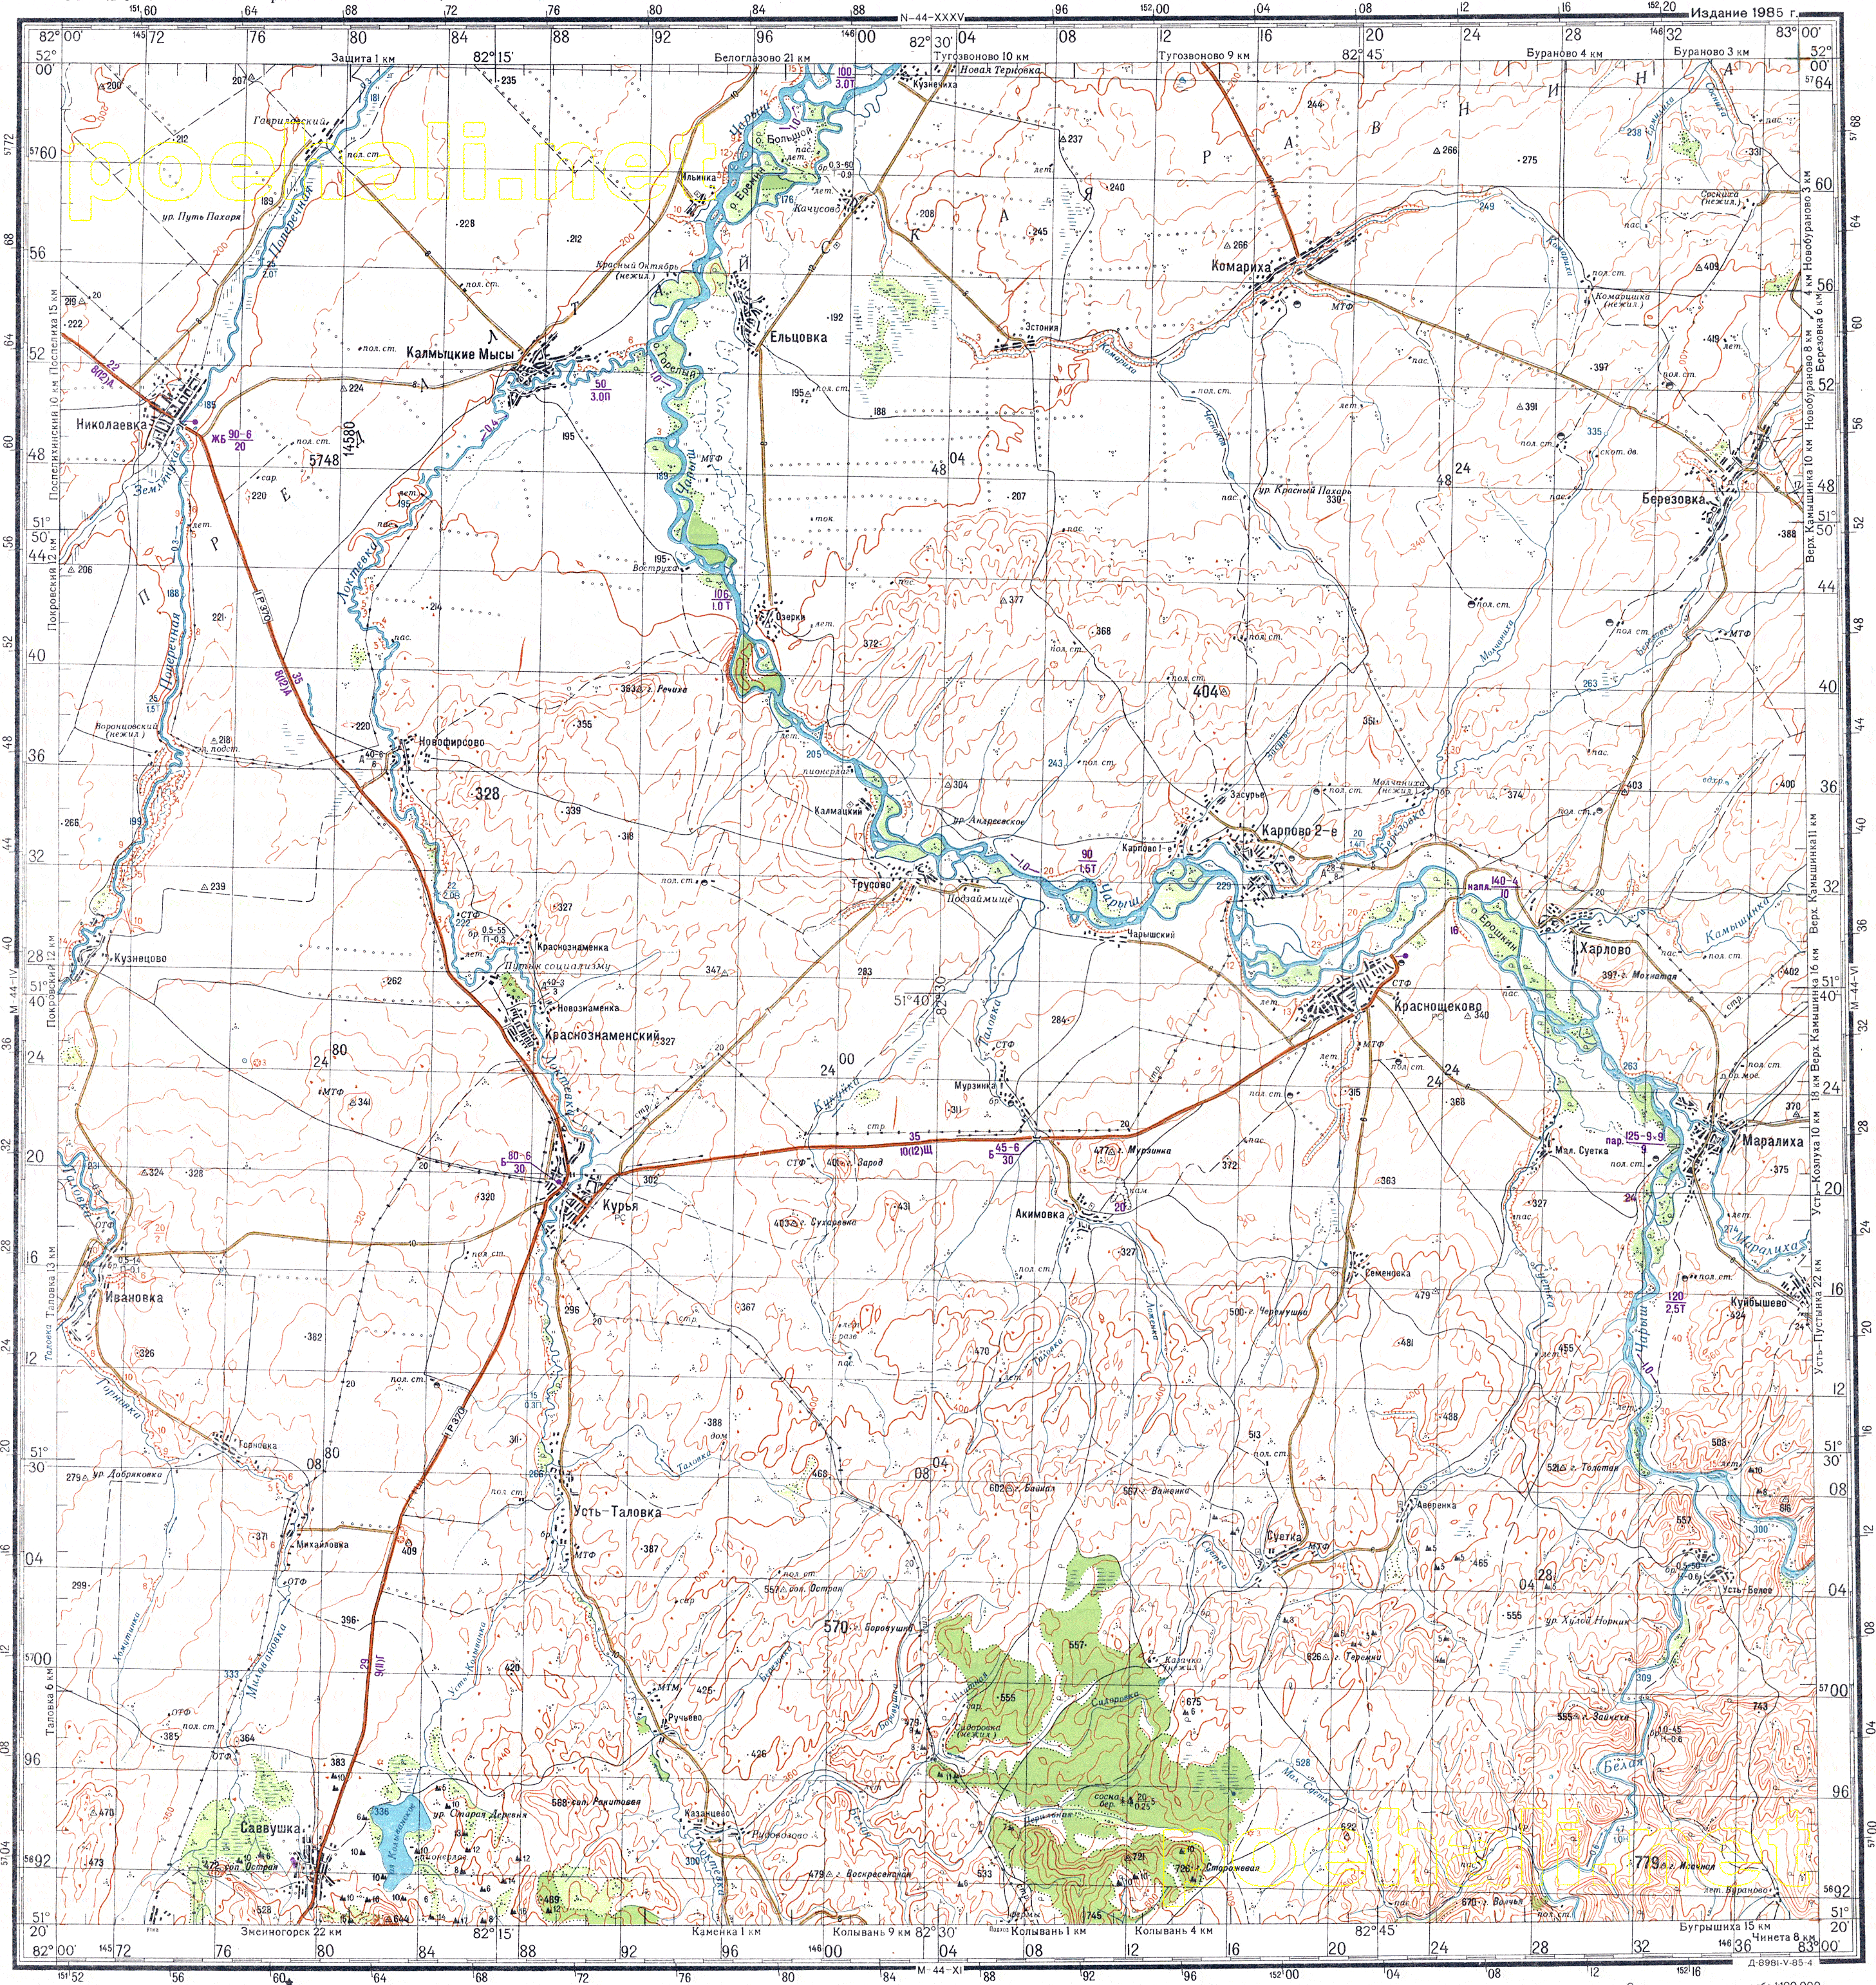 Карта полевые дороги